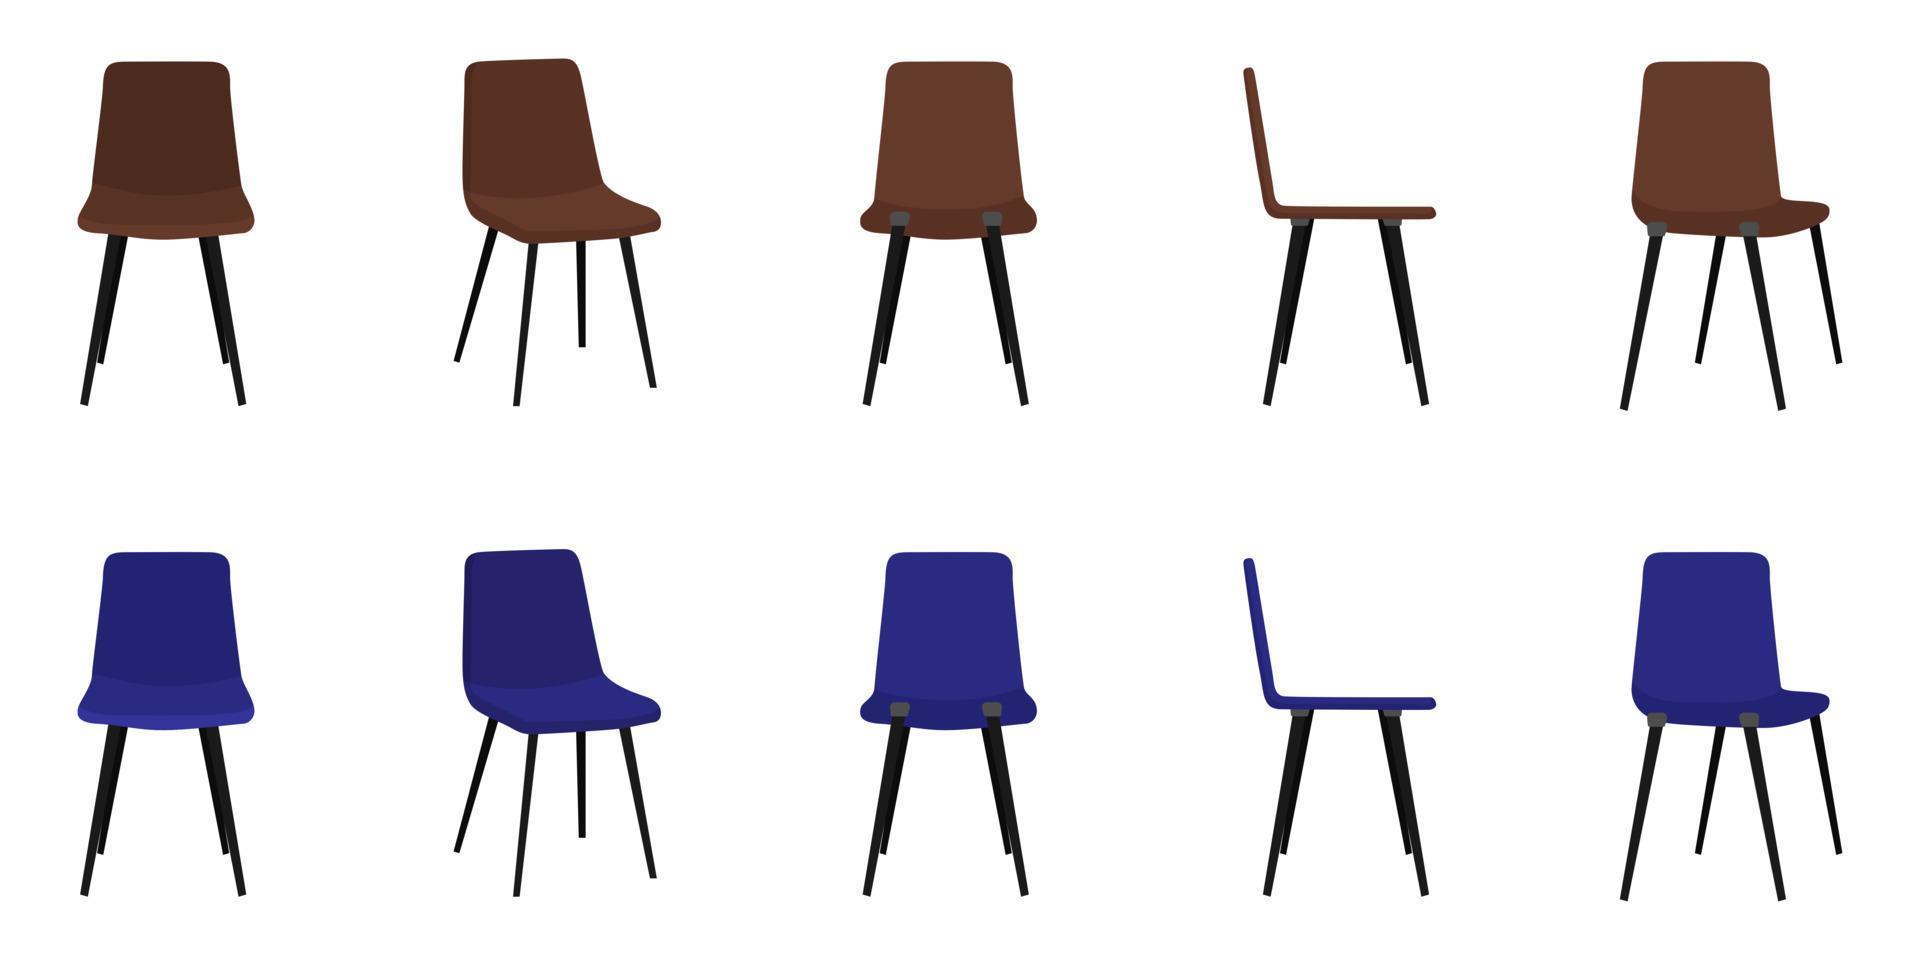 webcute mooie bureaustoel voor thuis en op kantoor met verschillende pose-positie en kleur geïsoleerd op een witte achtergrond vector